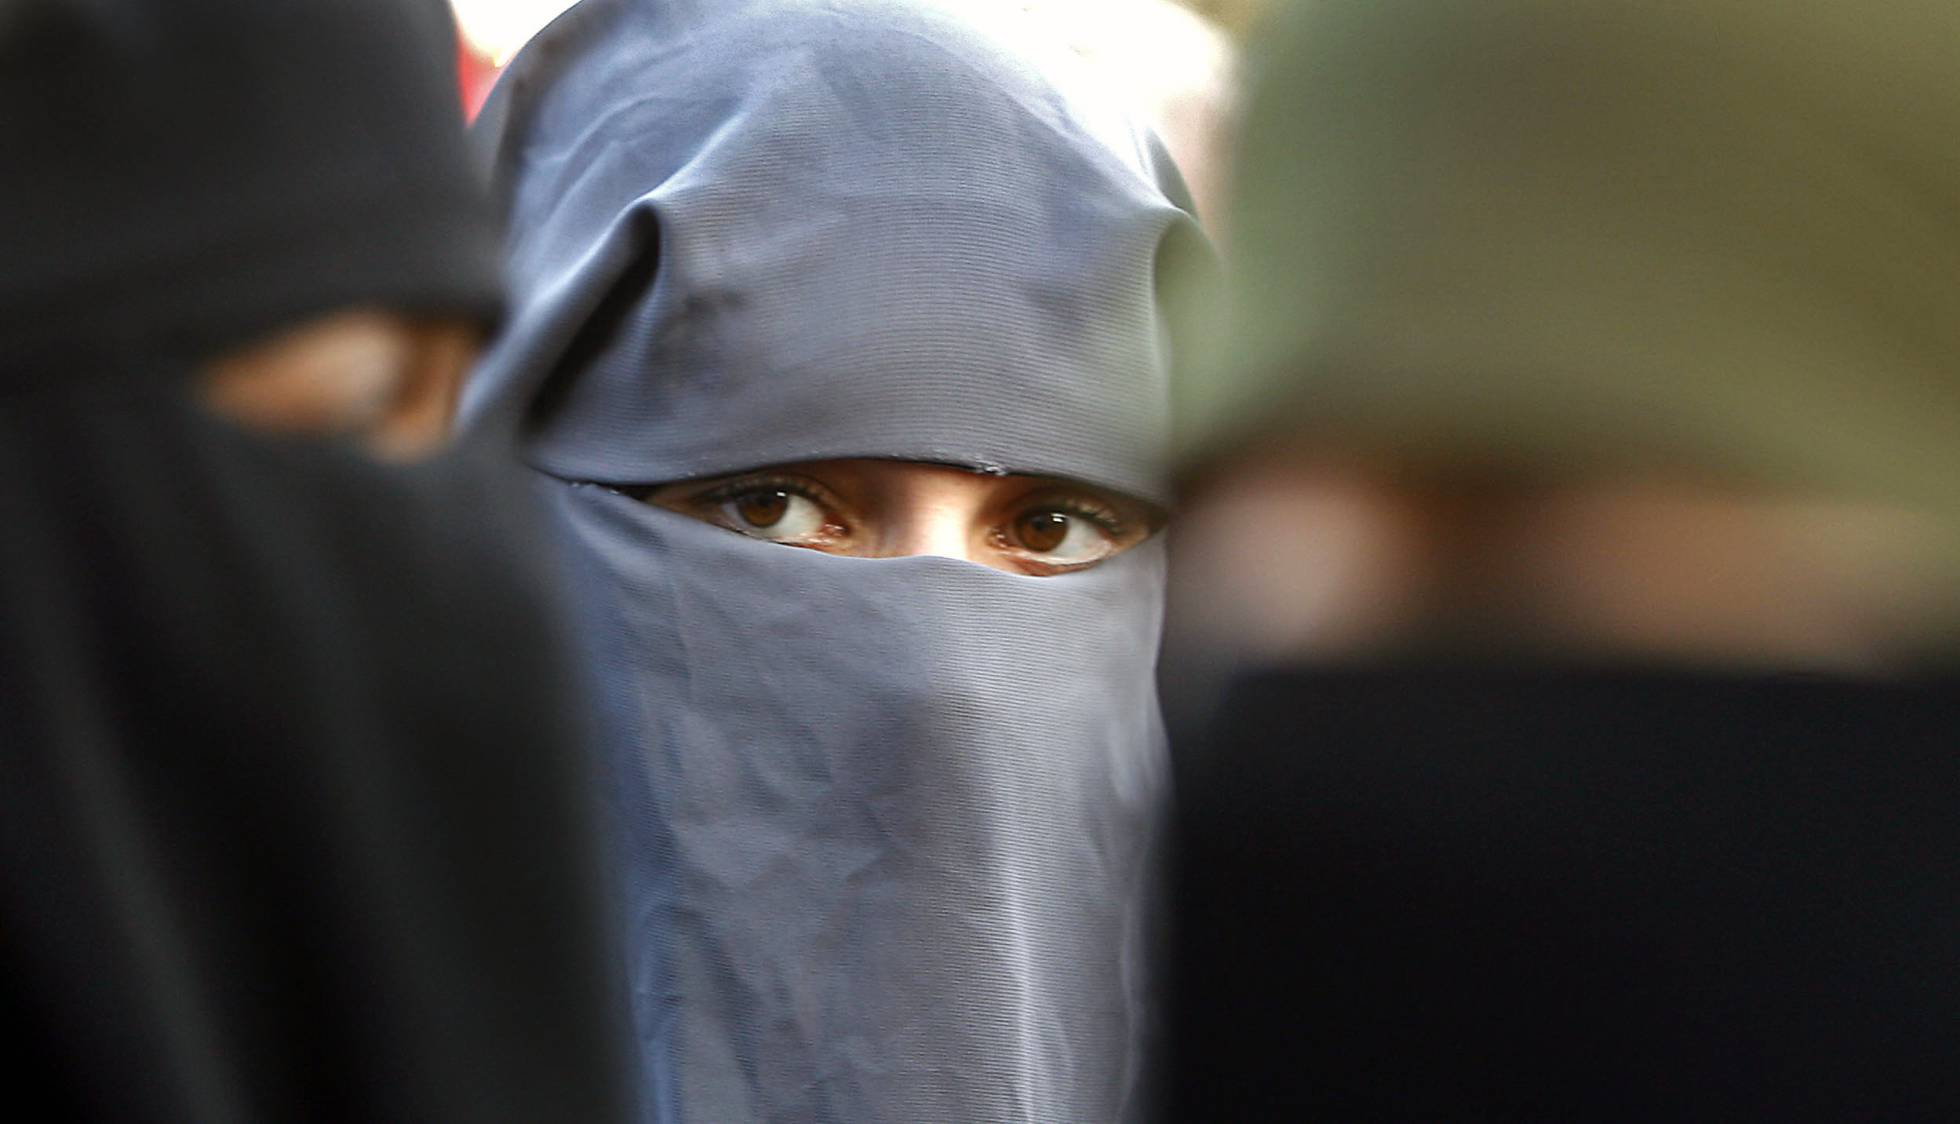  Burka  Holanda se suma otros pa ses europeos que proh ben 